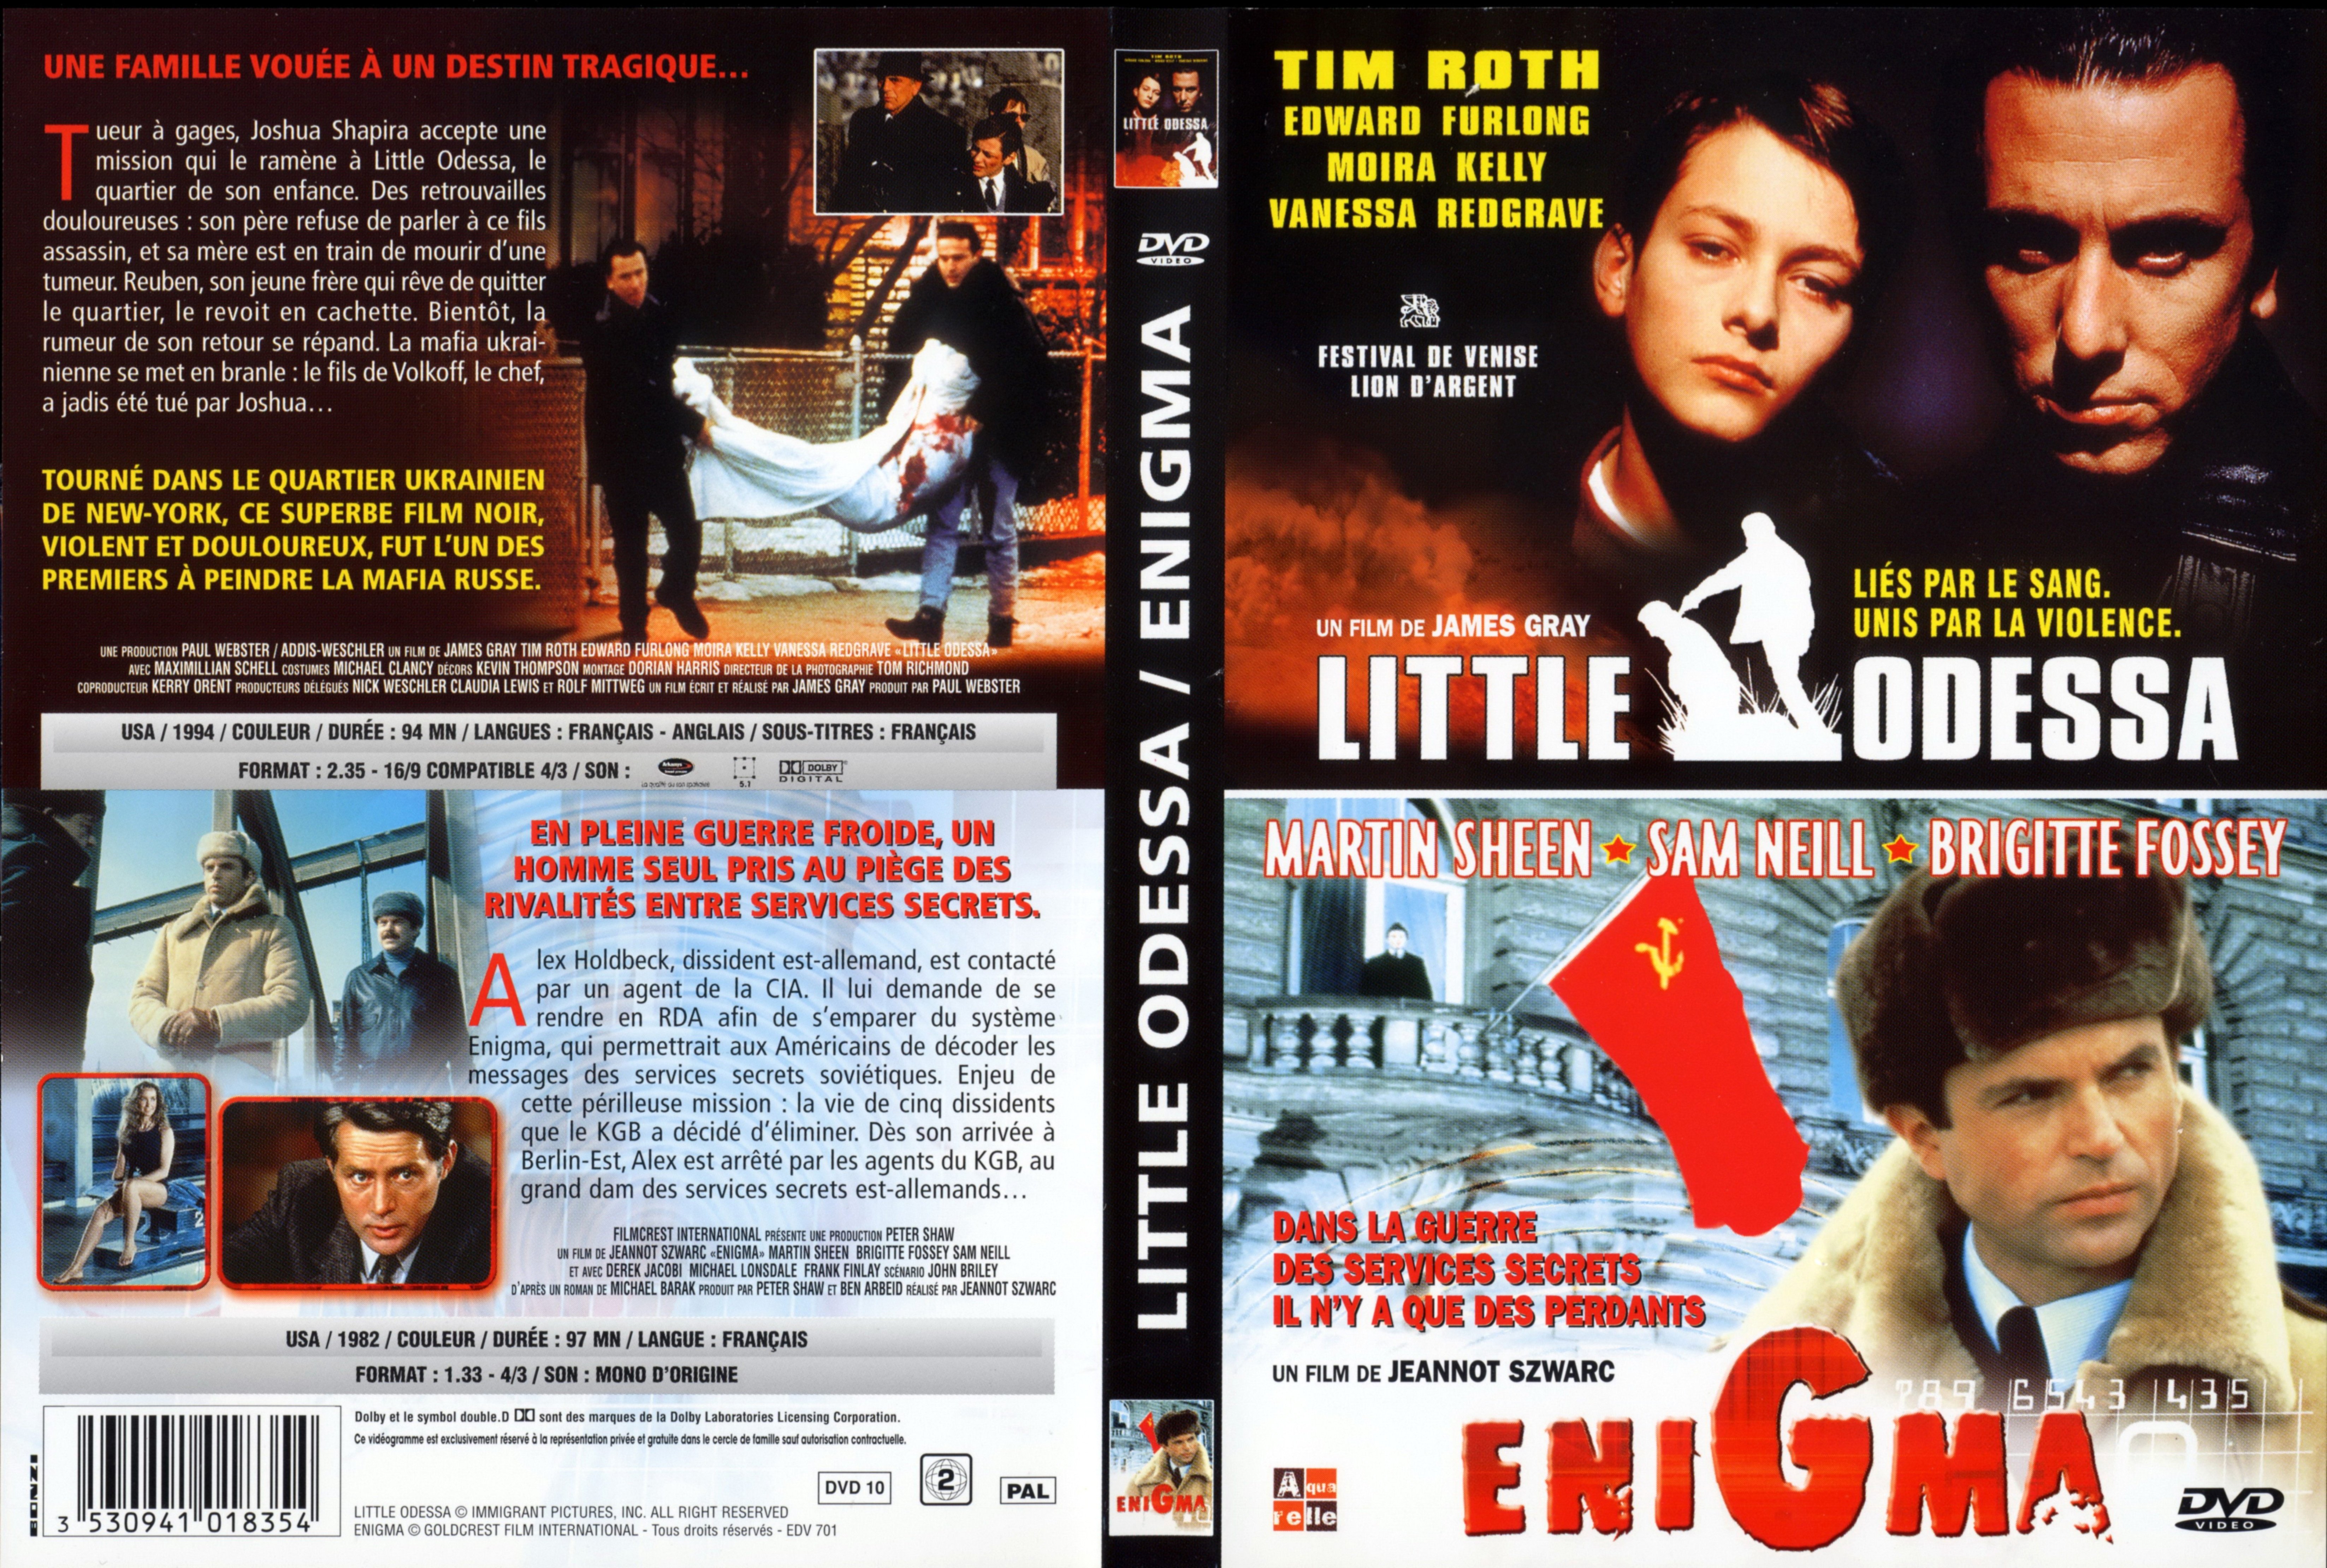 Jaquette DVD Little Odessa + Enigma